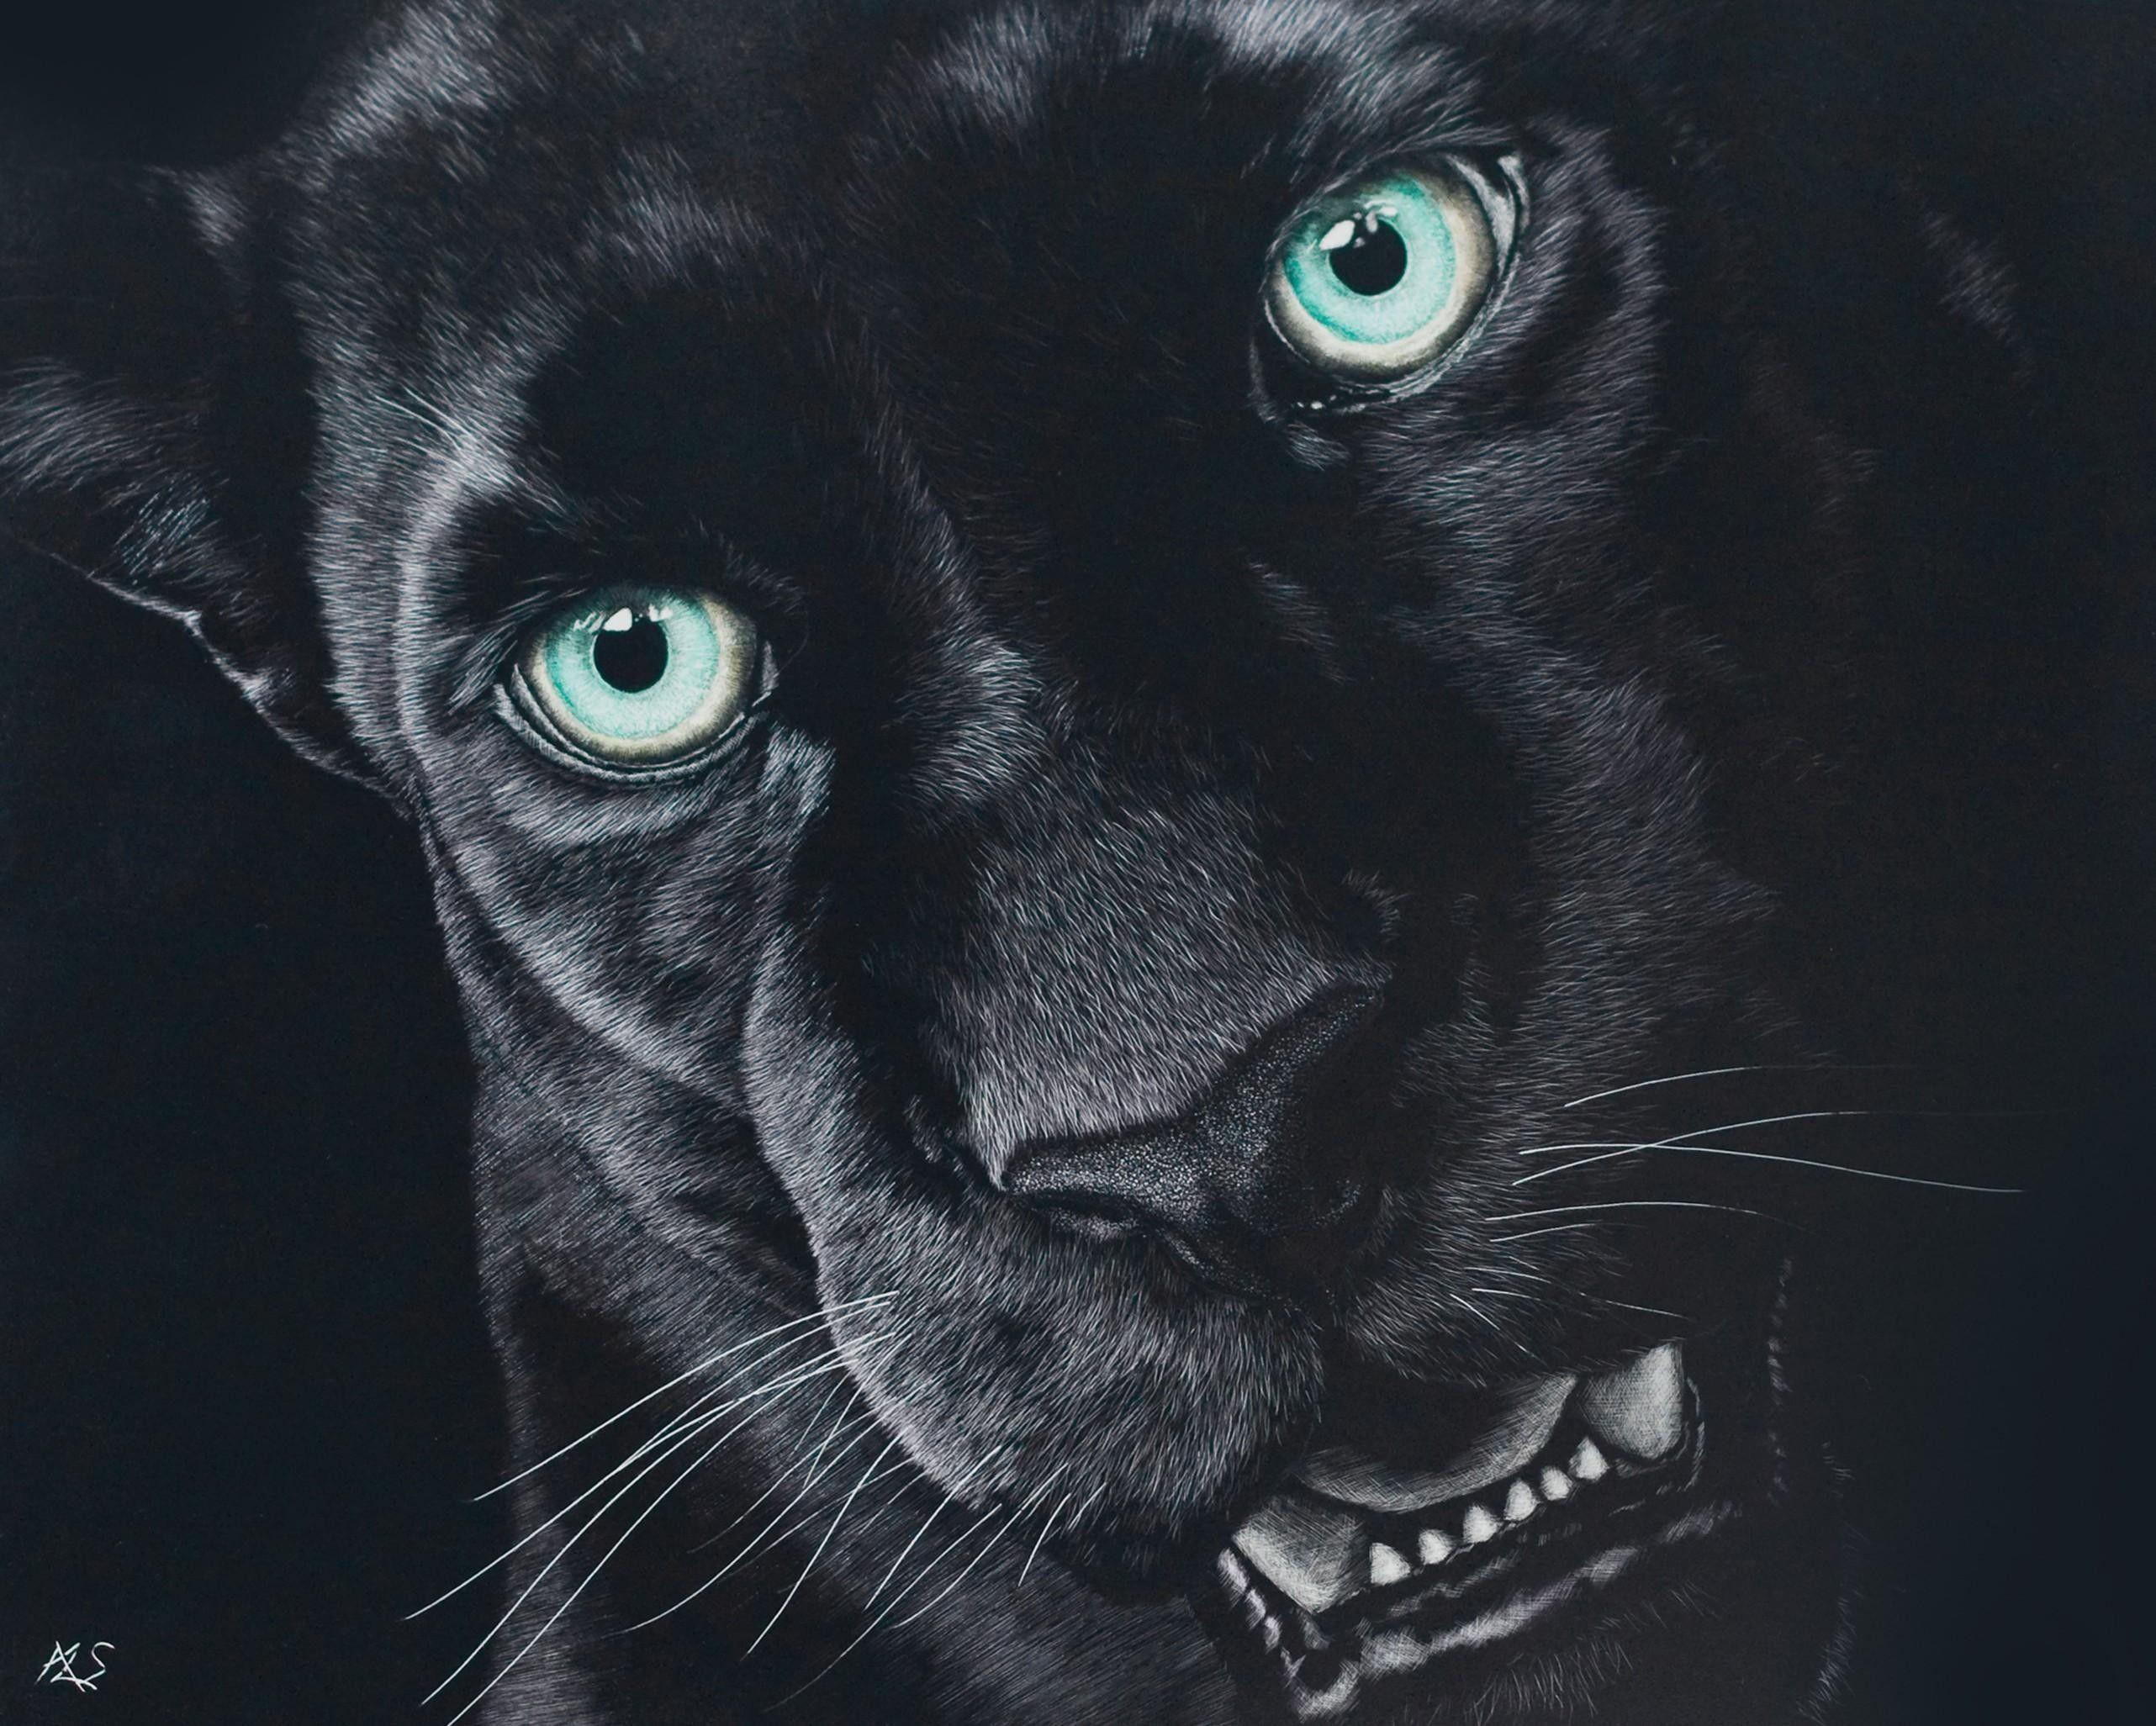 Black Jaguar 4K Wallpapers - Top Free Black Jaguar 4K Backgrounds